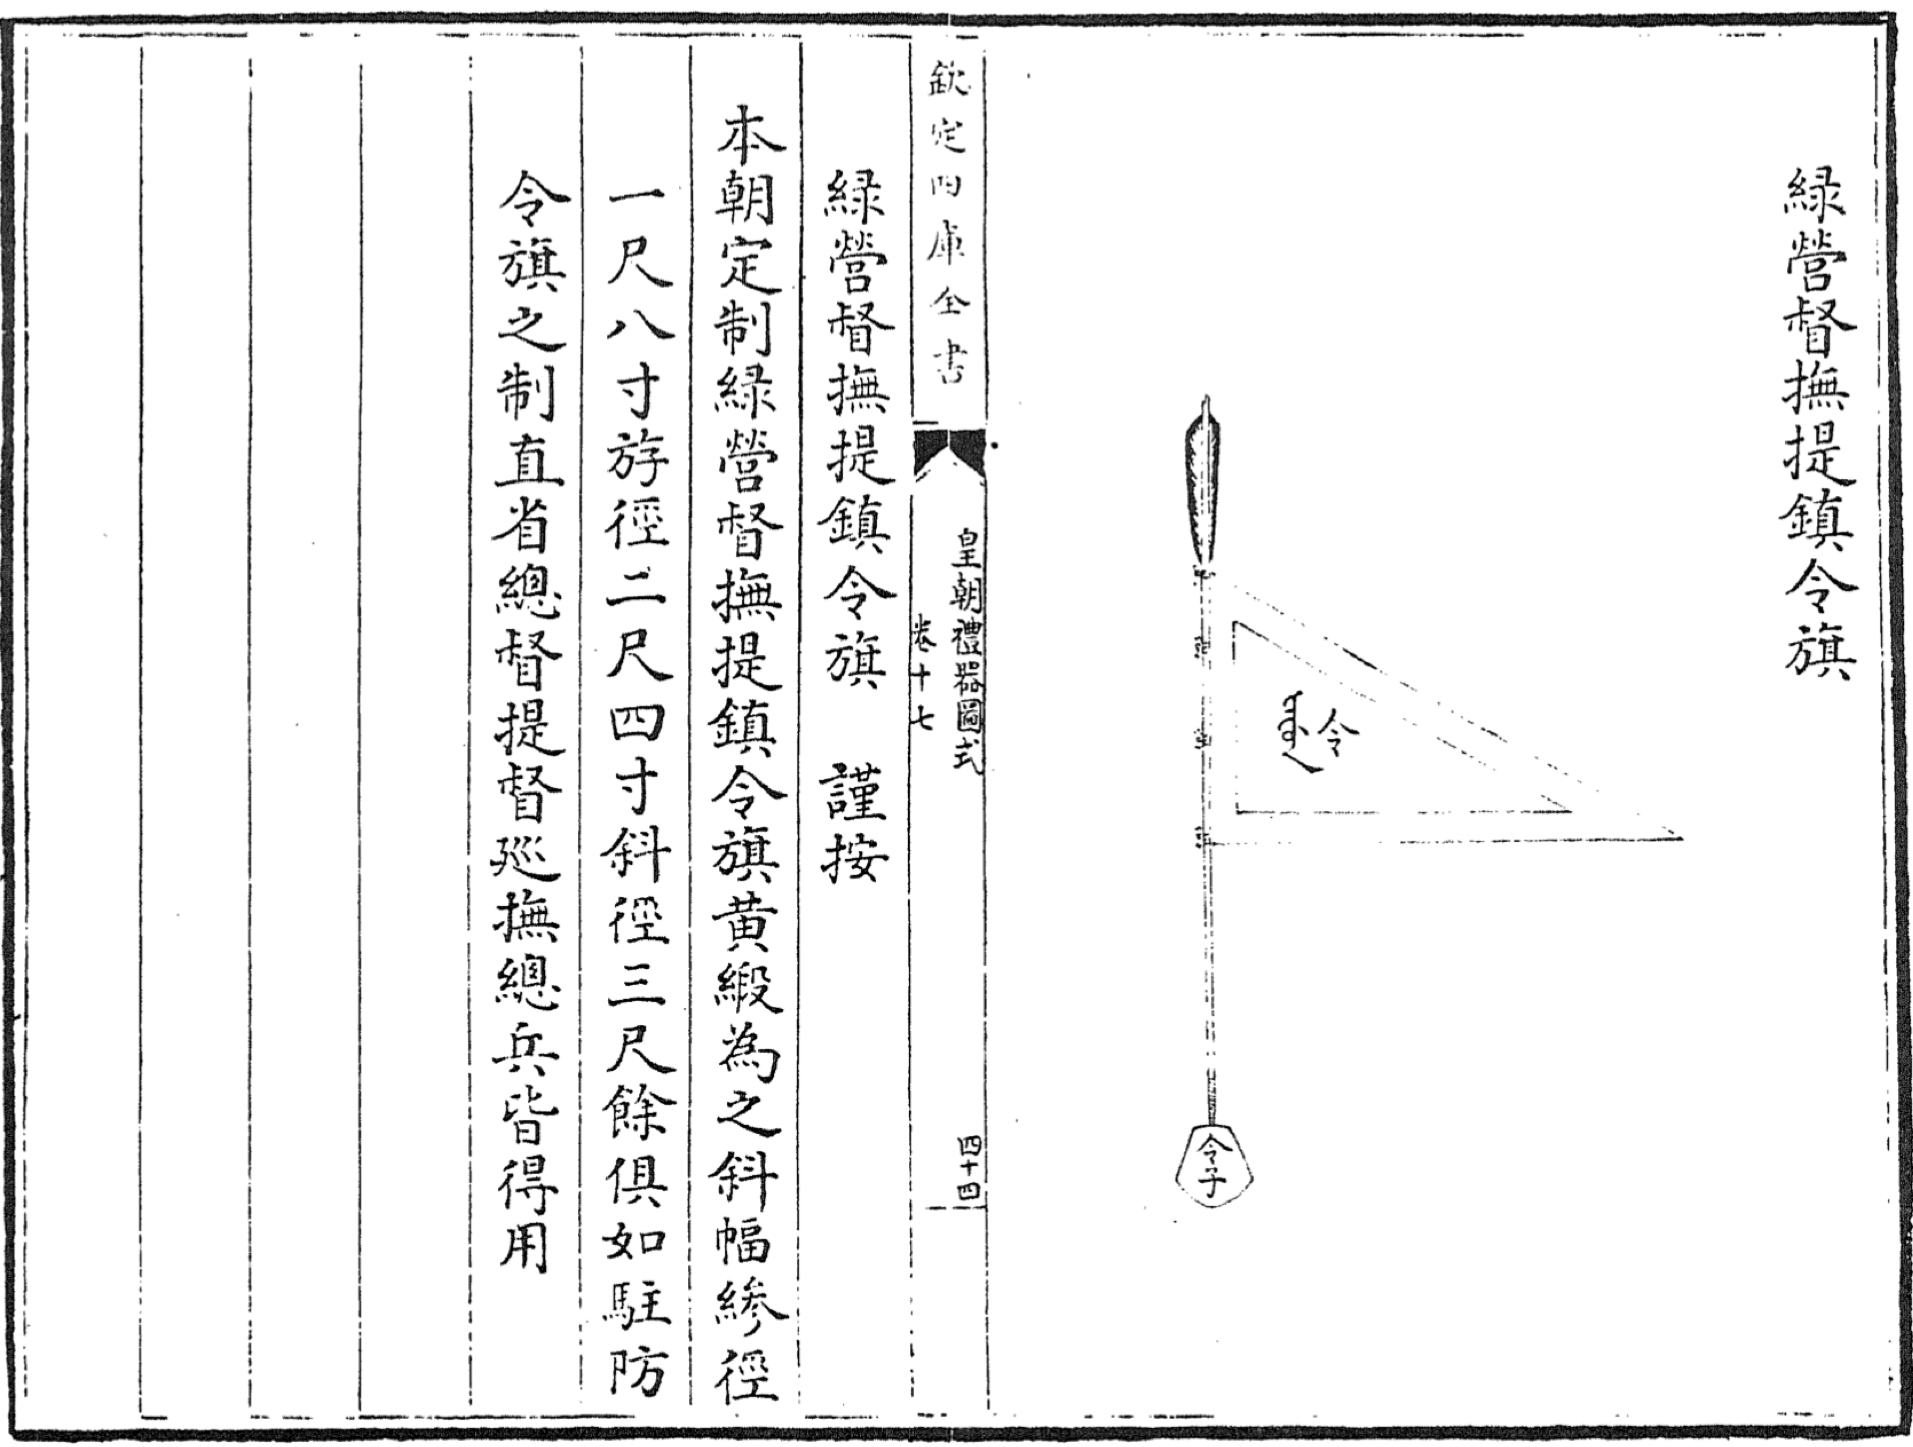 Command arrow in the Huangchao Liqi Tushi